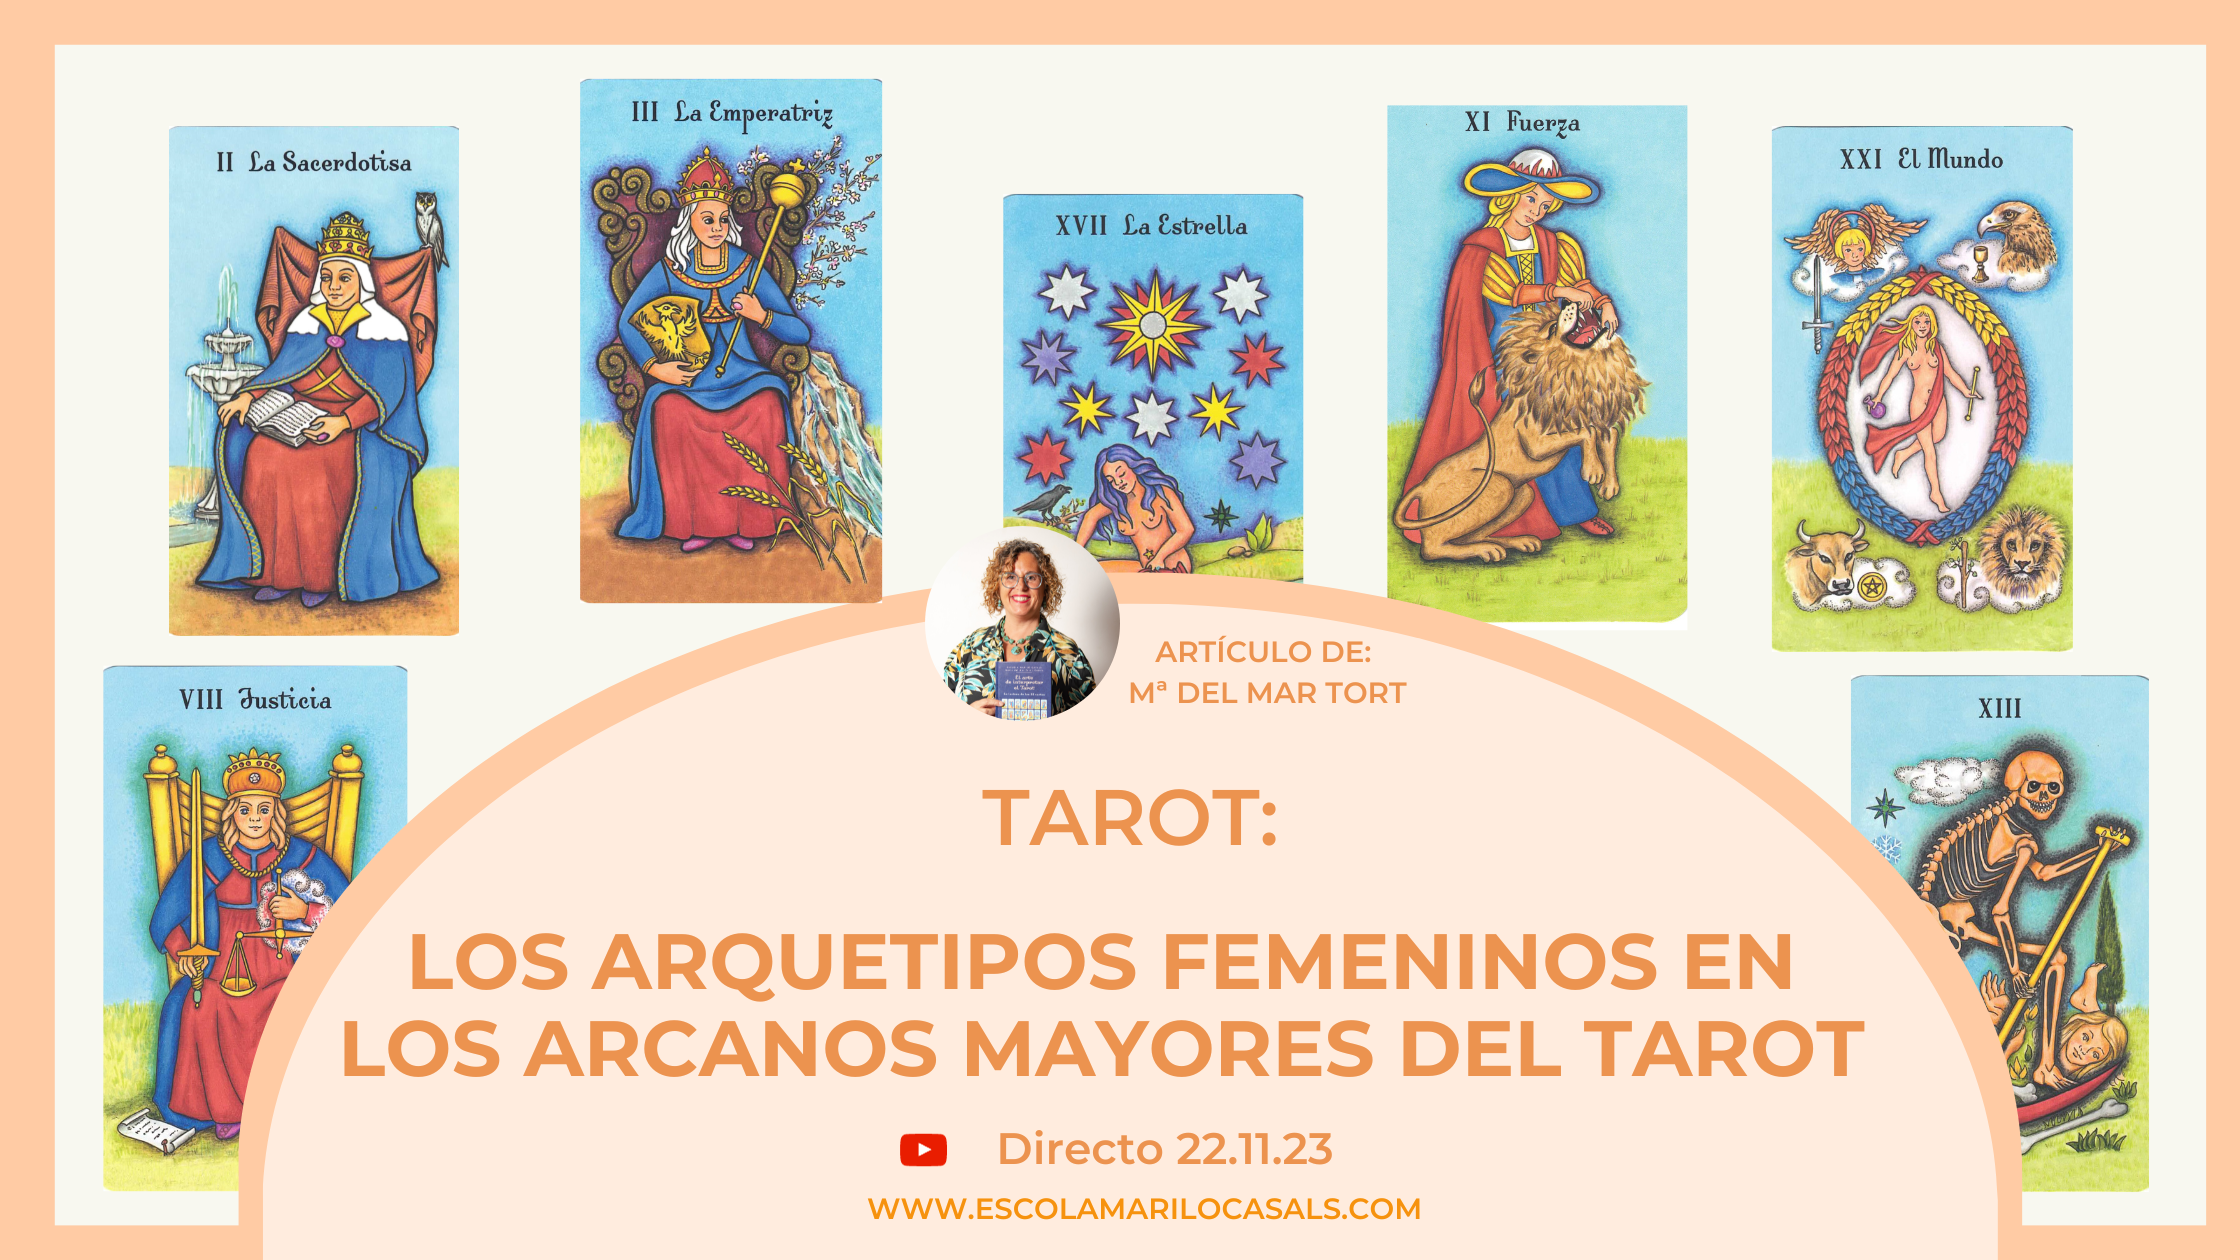 Artículo de Mª del Mar Tort sobre los Arquetipos femeninos de los Arcanos Mayores del Tarot